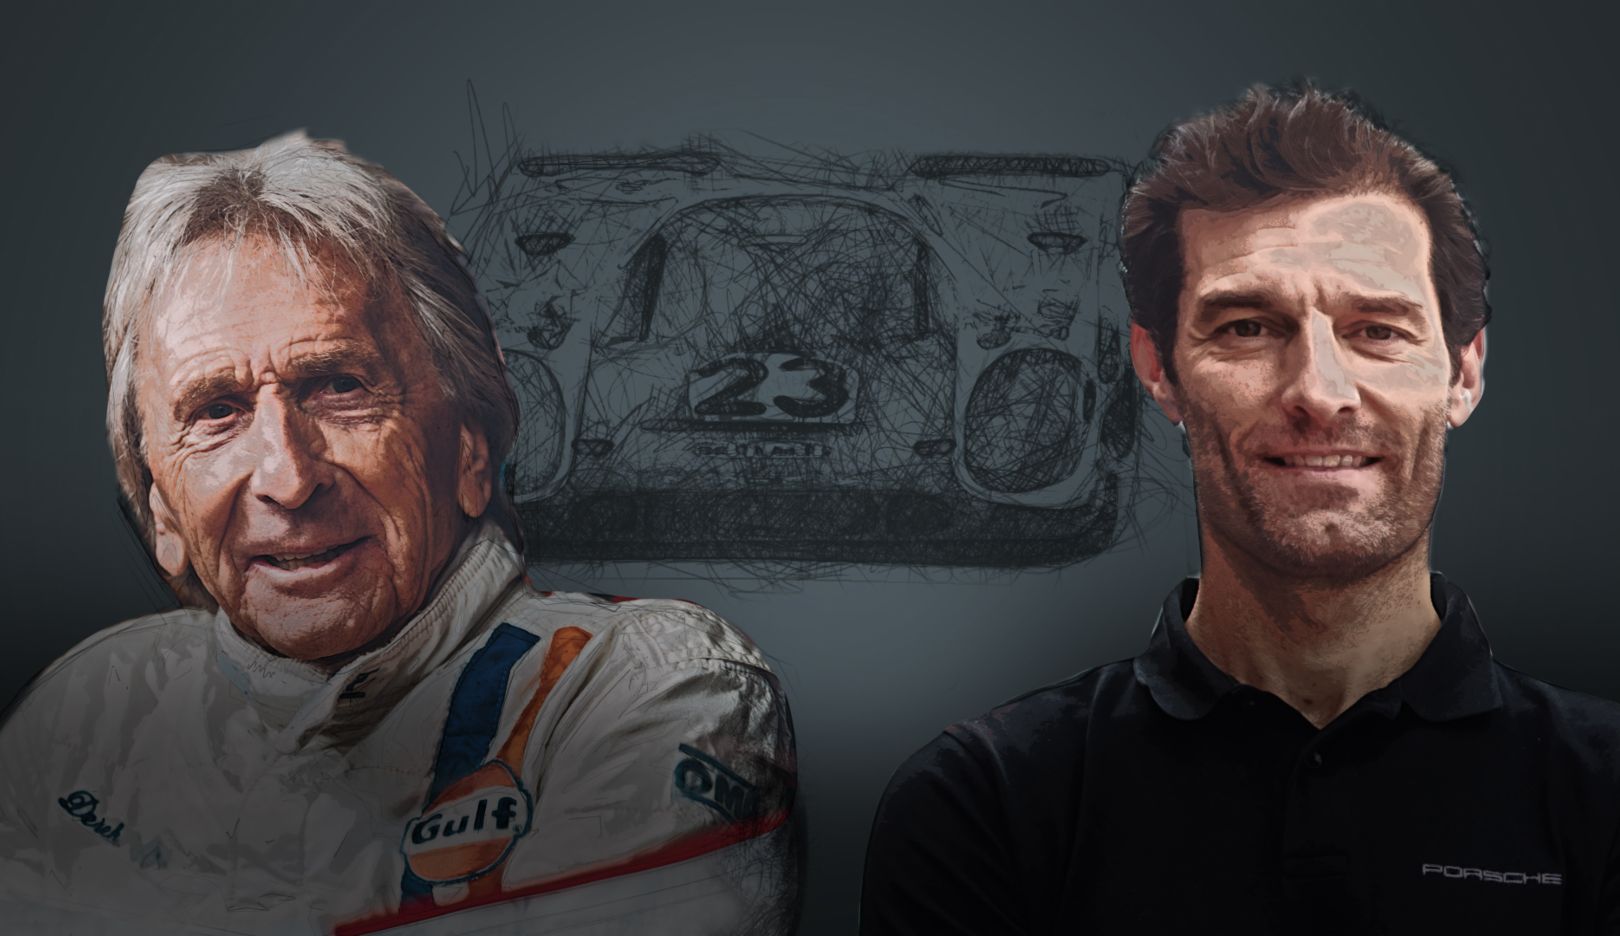 Le Mans Mark Webber